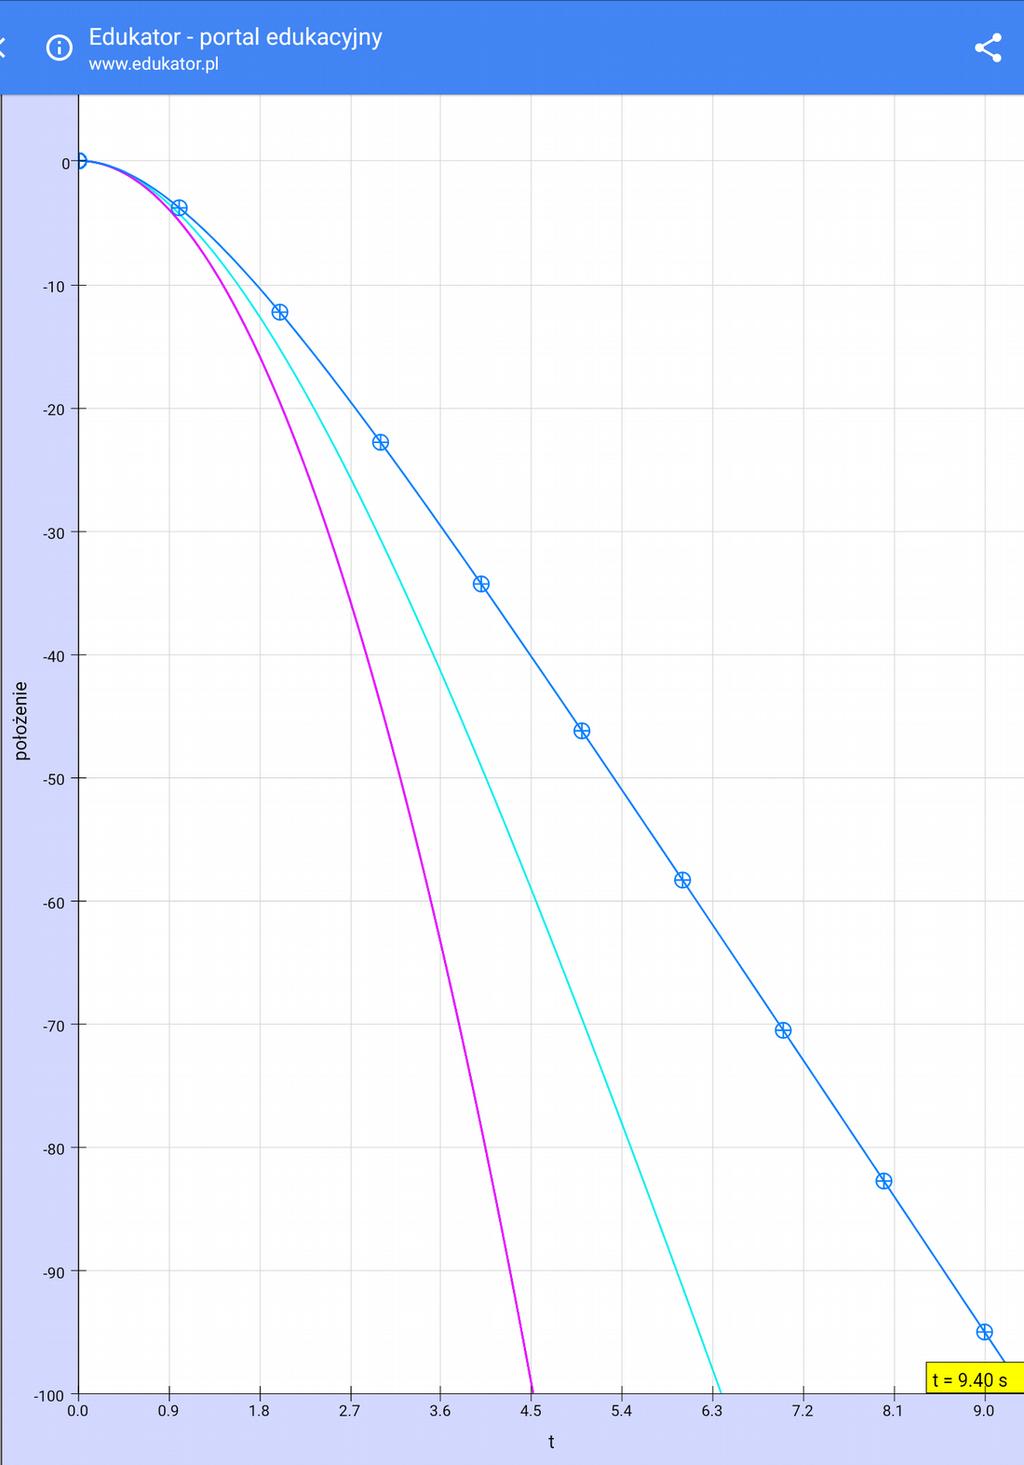 Ruch bez oporu jest ruchem jednostajnie przyspieszonym, co wskazuje wykres (różowa linia) Dla II ruchu- niebieska linia, gdzie był już współczynnik oporu, czas spadku stał się dłuższy, a dla III